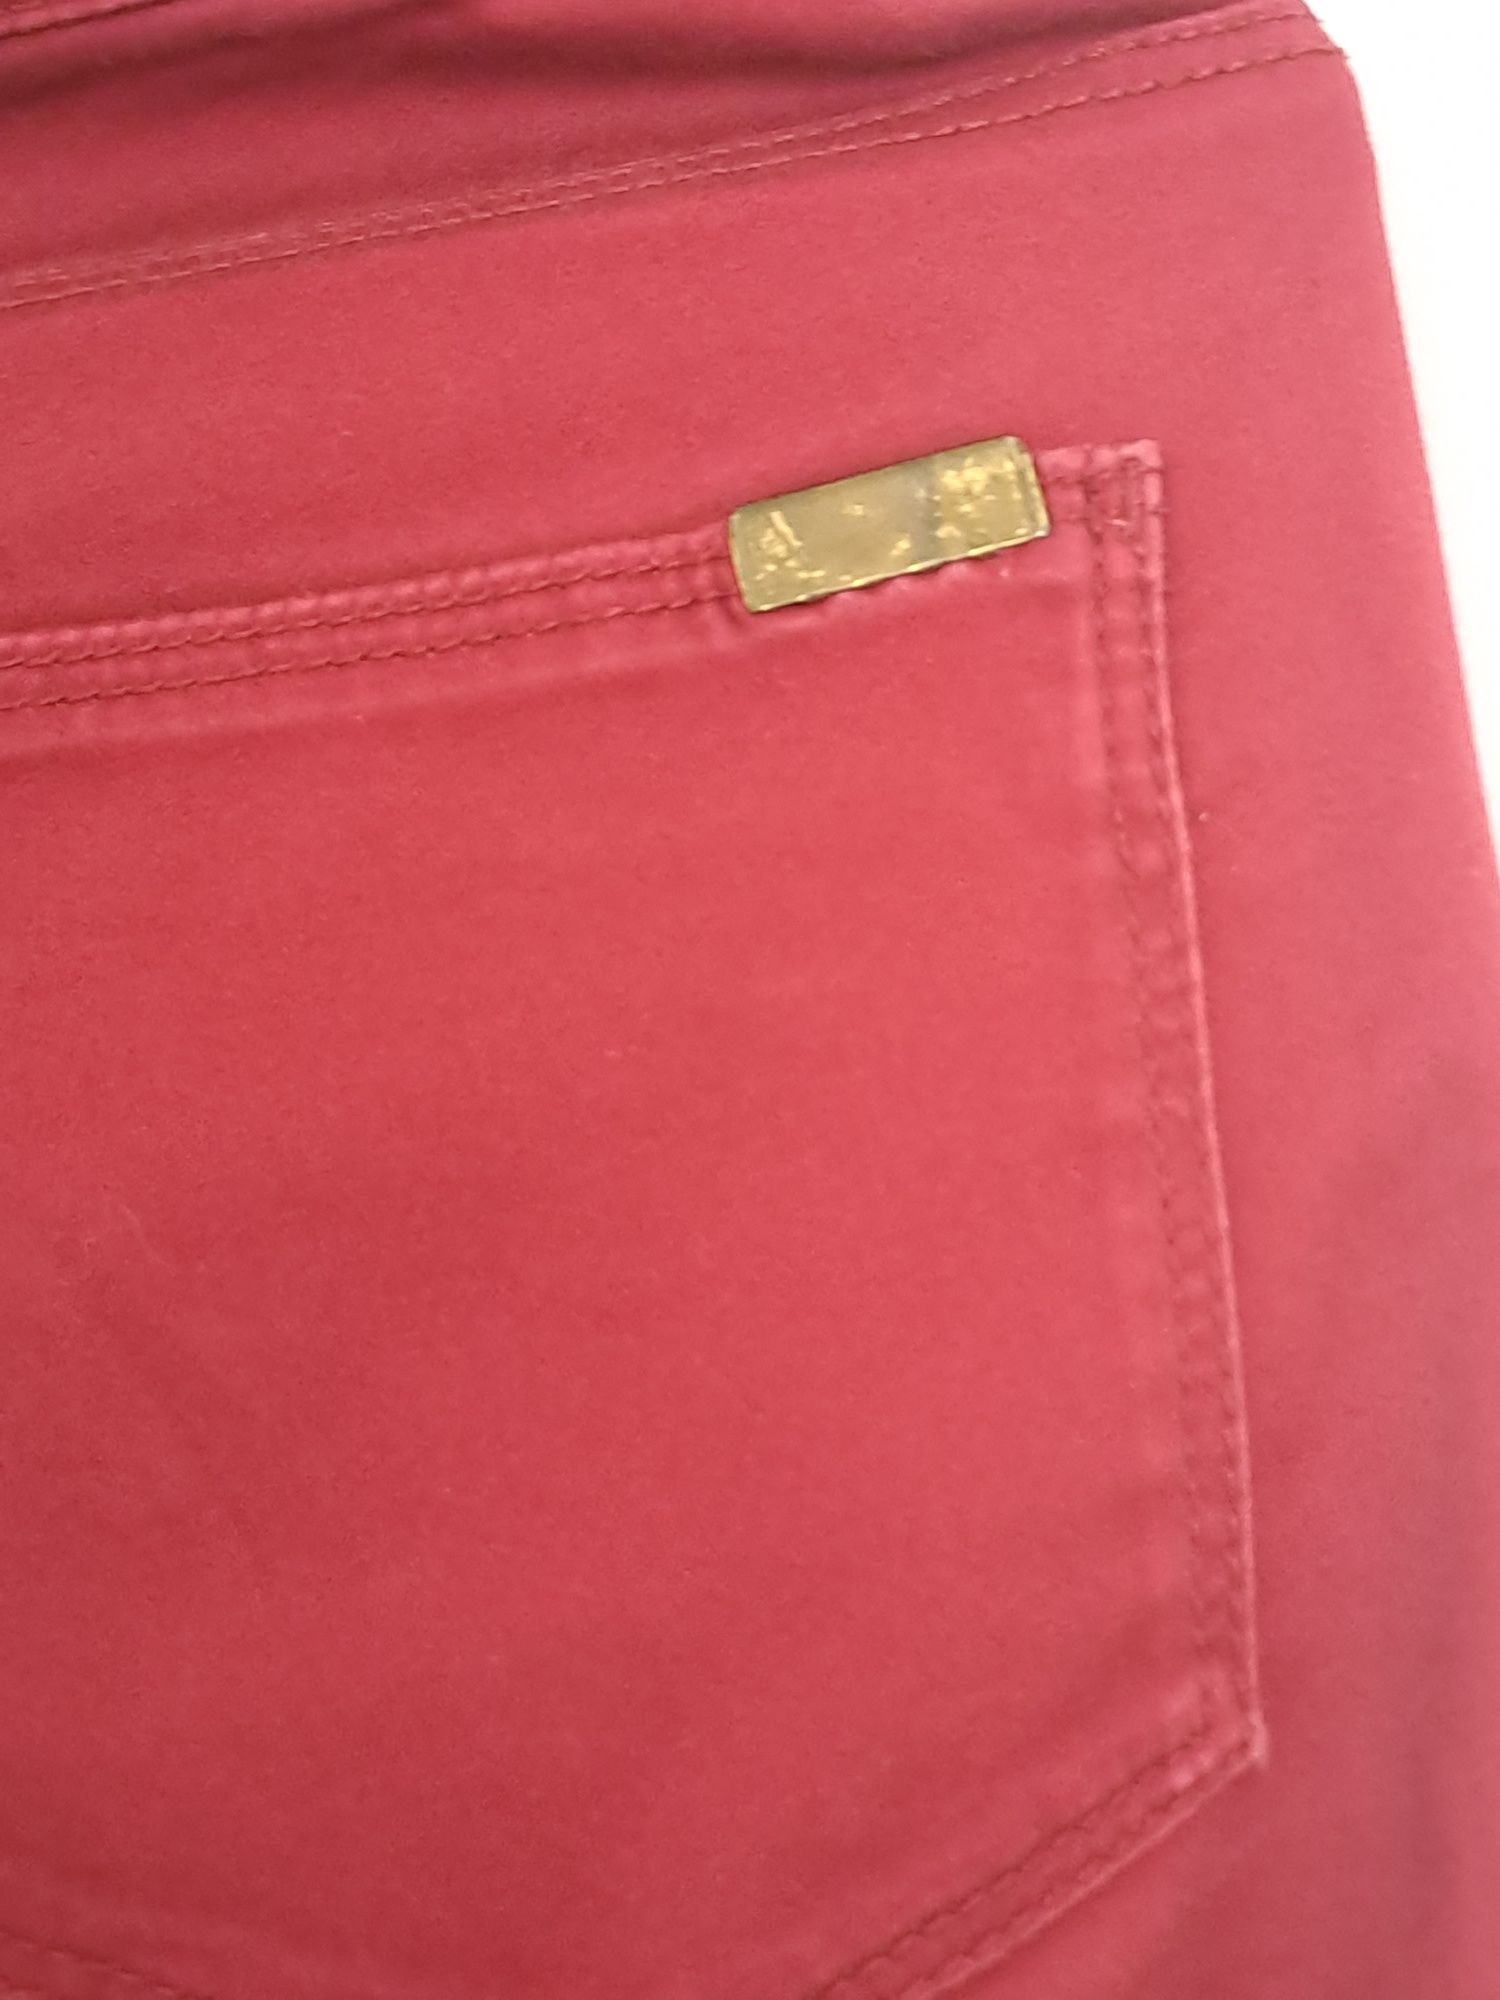 Spodnie damskie H&M rozmiar 36 rozpinane nogawki